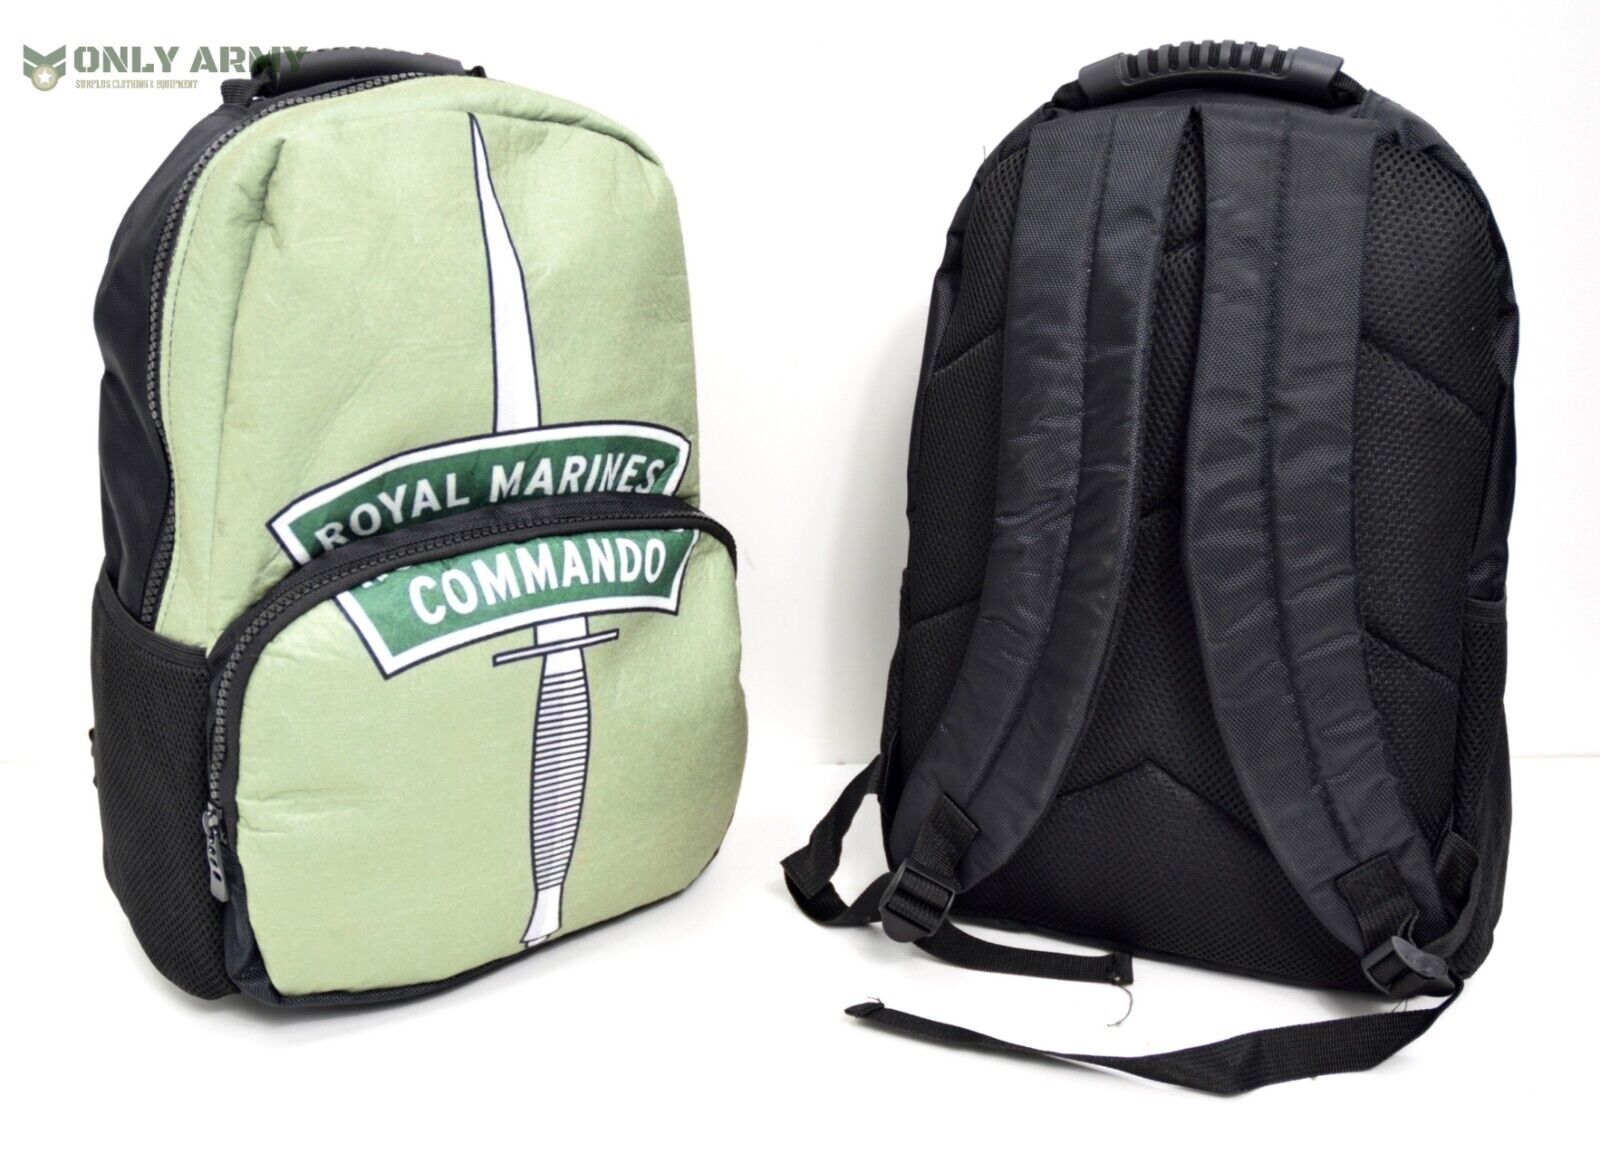 Royal Marines Commando Backpack 20L Bag Cadet Army Rucksack Printed RM Logo